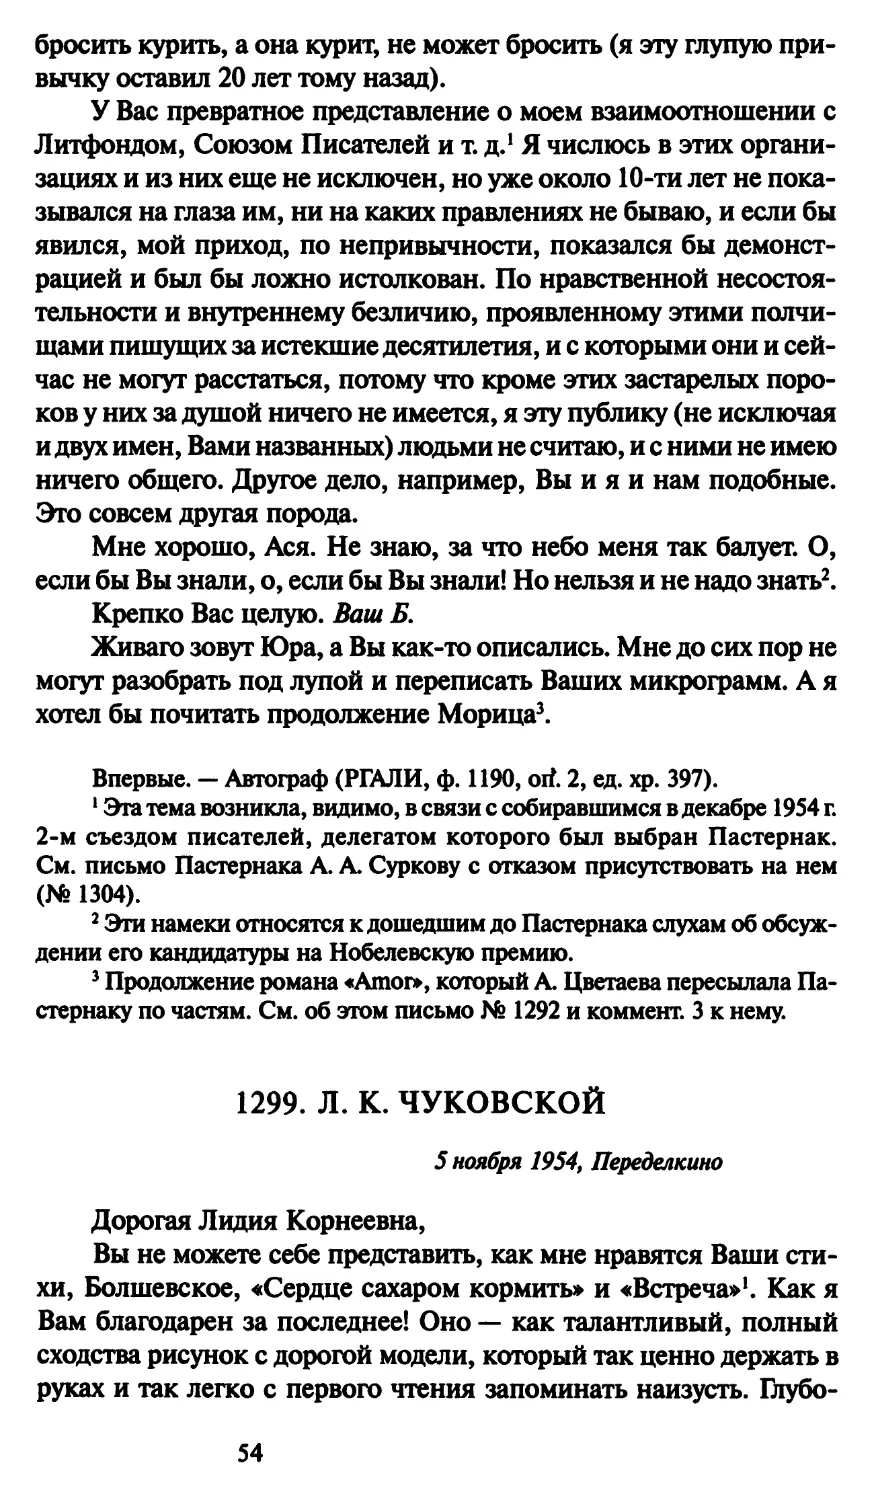 1299. Л. К. Чуковской 5 ноября 1954